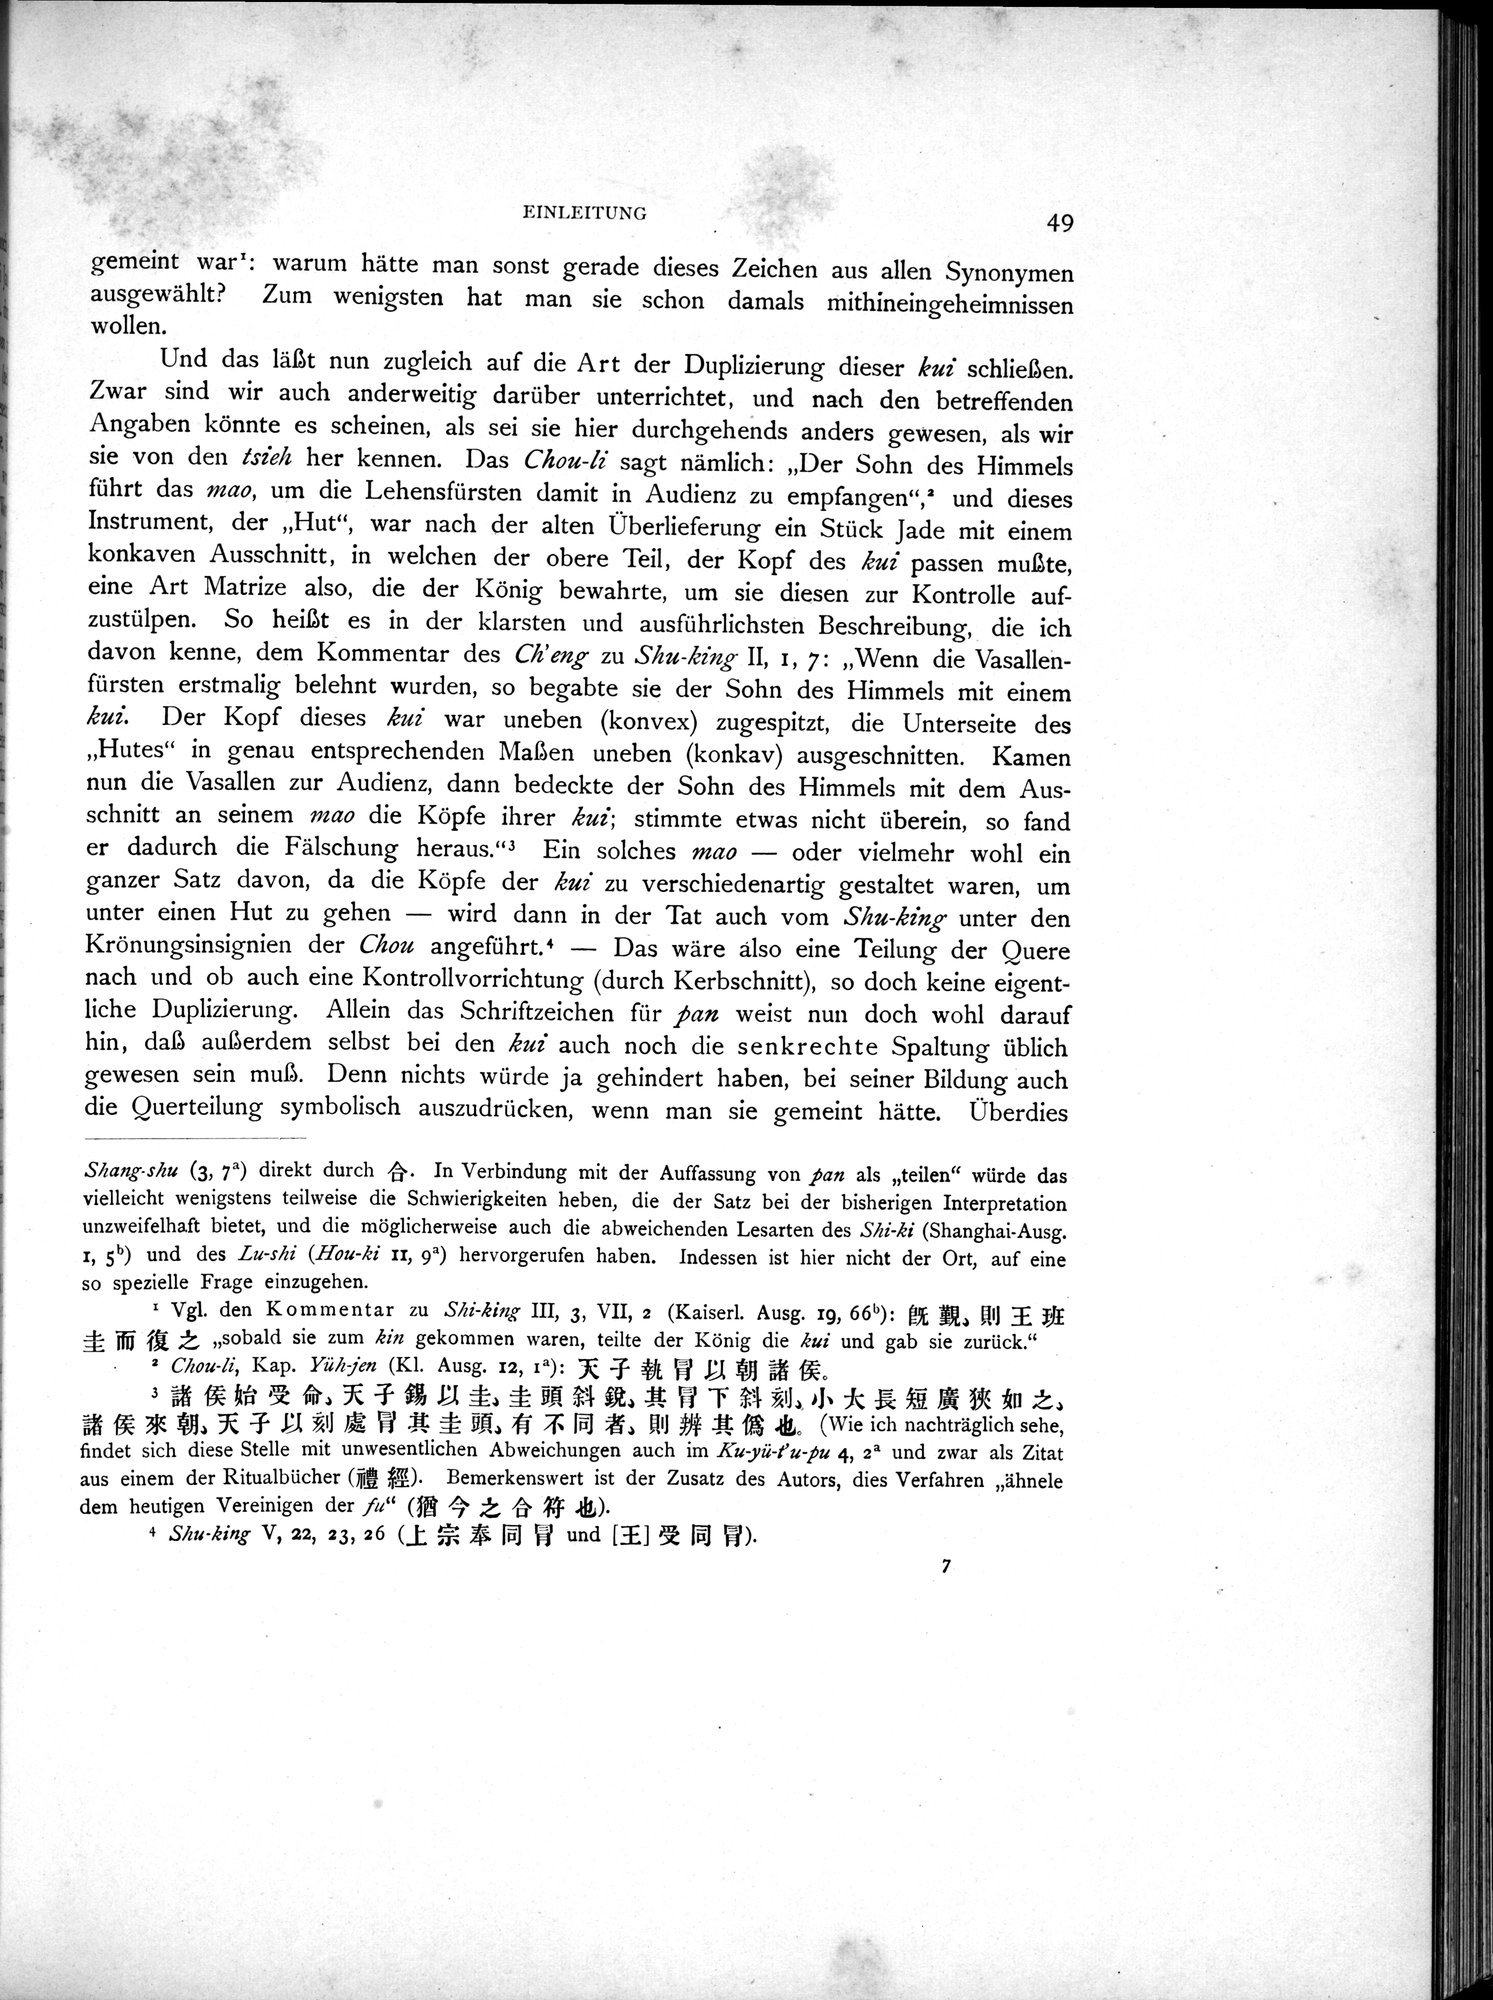 Die Chinesischen Handschriften- und sonstigen Kleinfunde Sven Hedins in Lou-lan : vol.1 / Page 73 (Grayscale High Resolution Image)